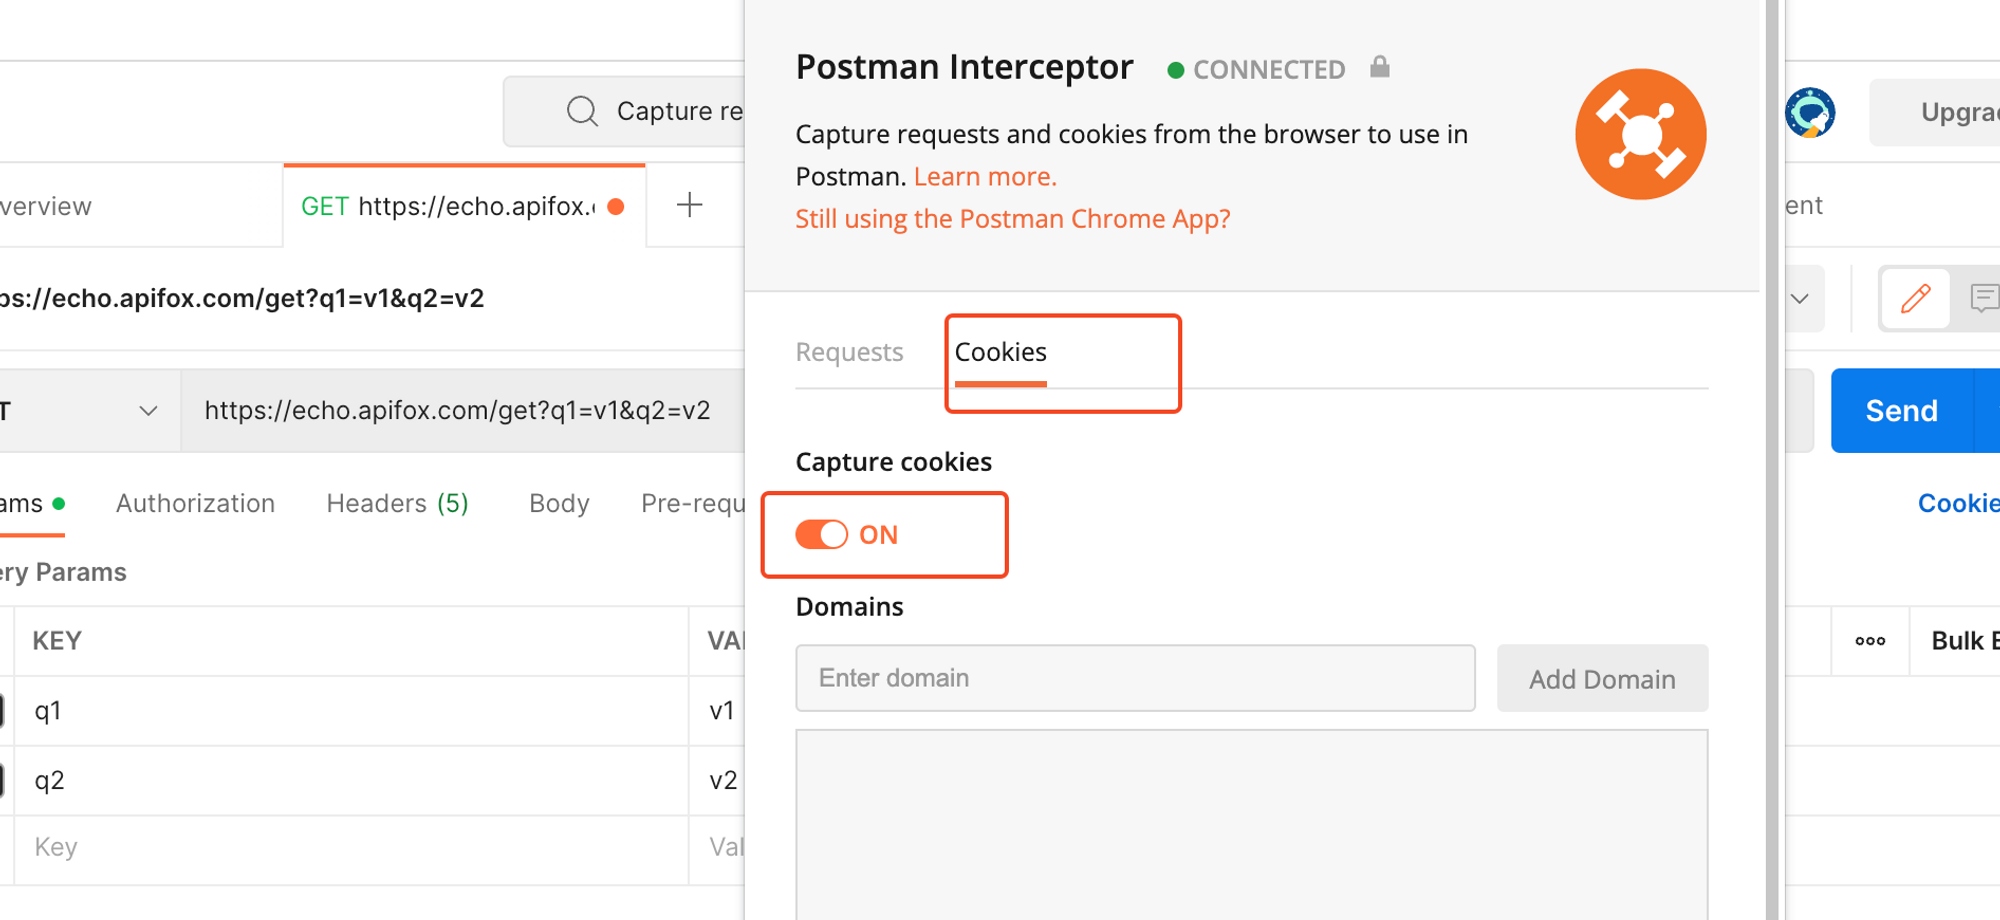 【详细教程】Postman Interceptor 插件的使用方法_API_08